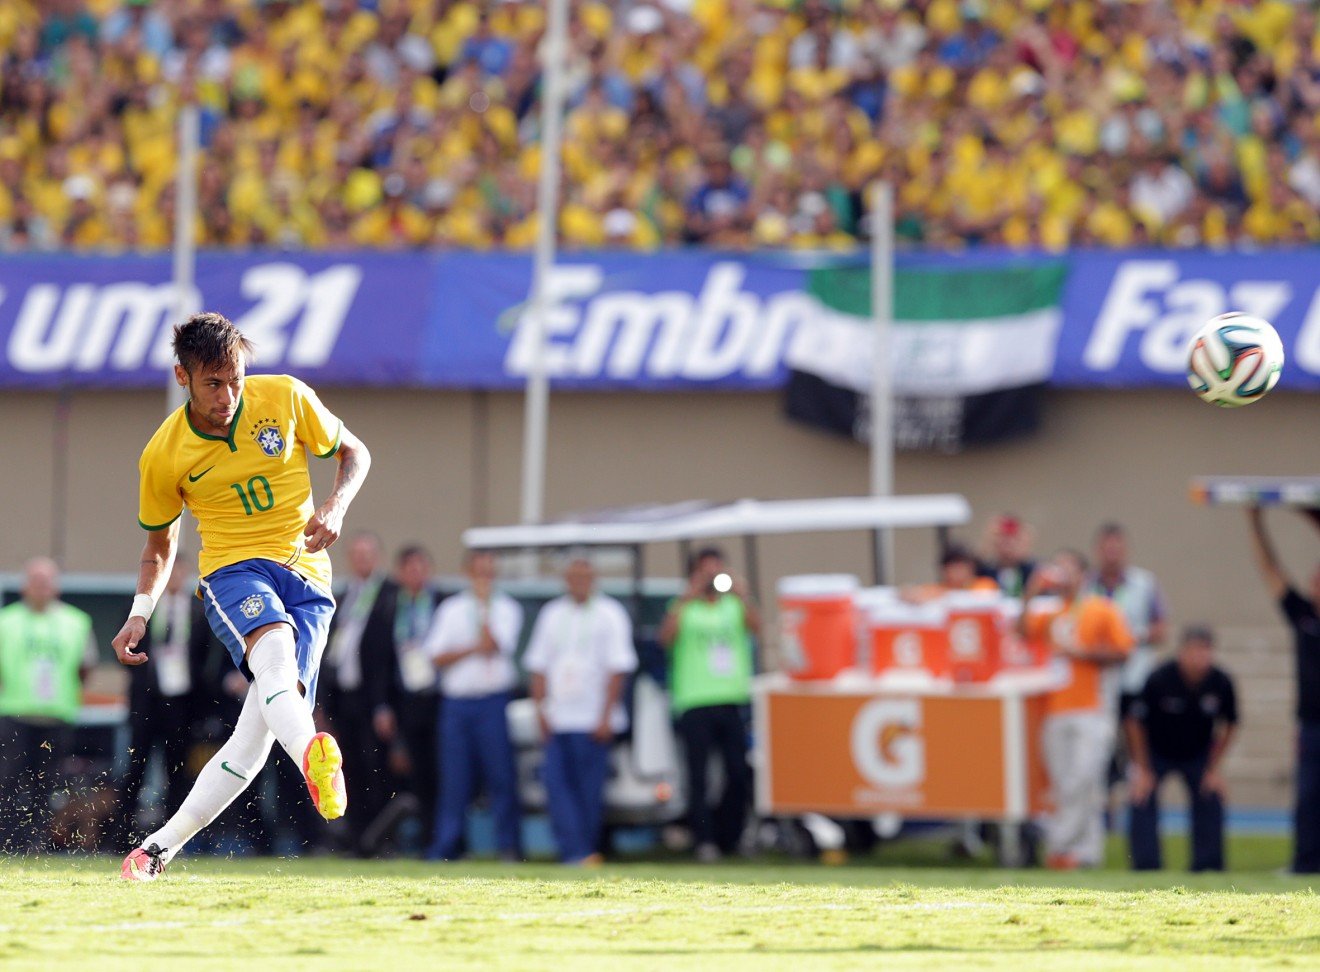 Neymar quase marca golaço em cobrança de falta